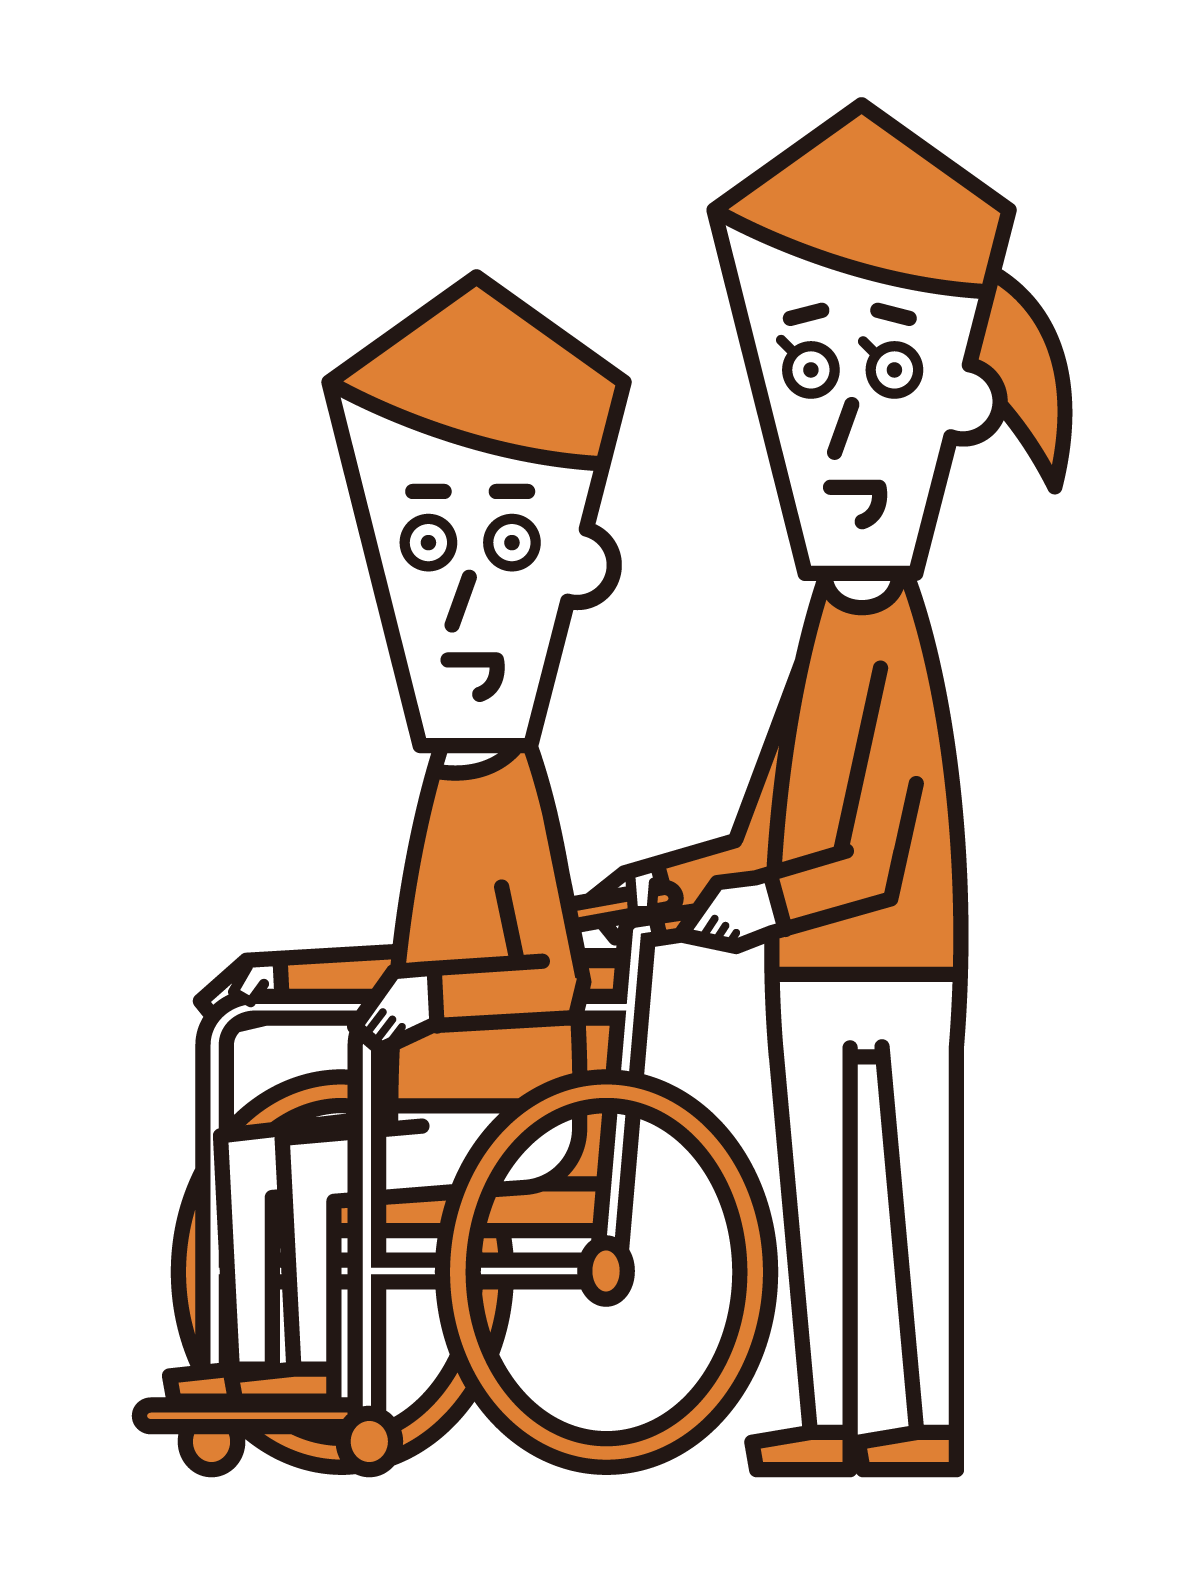 坐在輪椅上的人（男性）和推輪椅的人（女性）的插圖